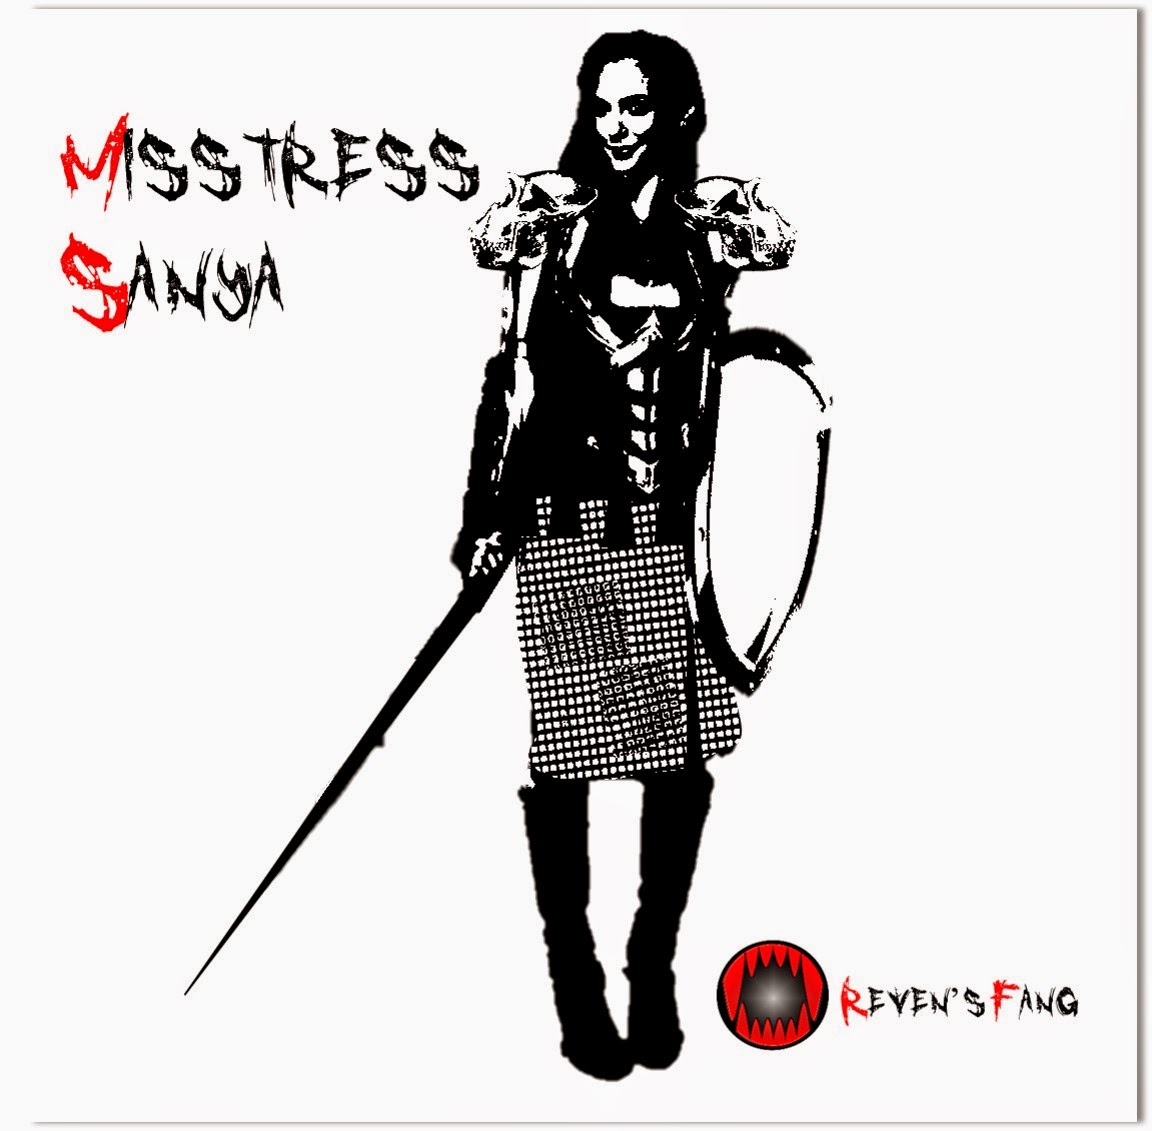 Mistress Sanya from the fantasy story www.revensfang.com